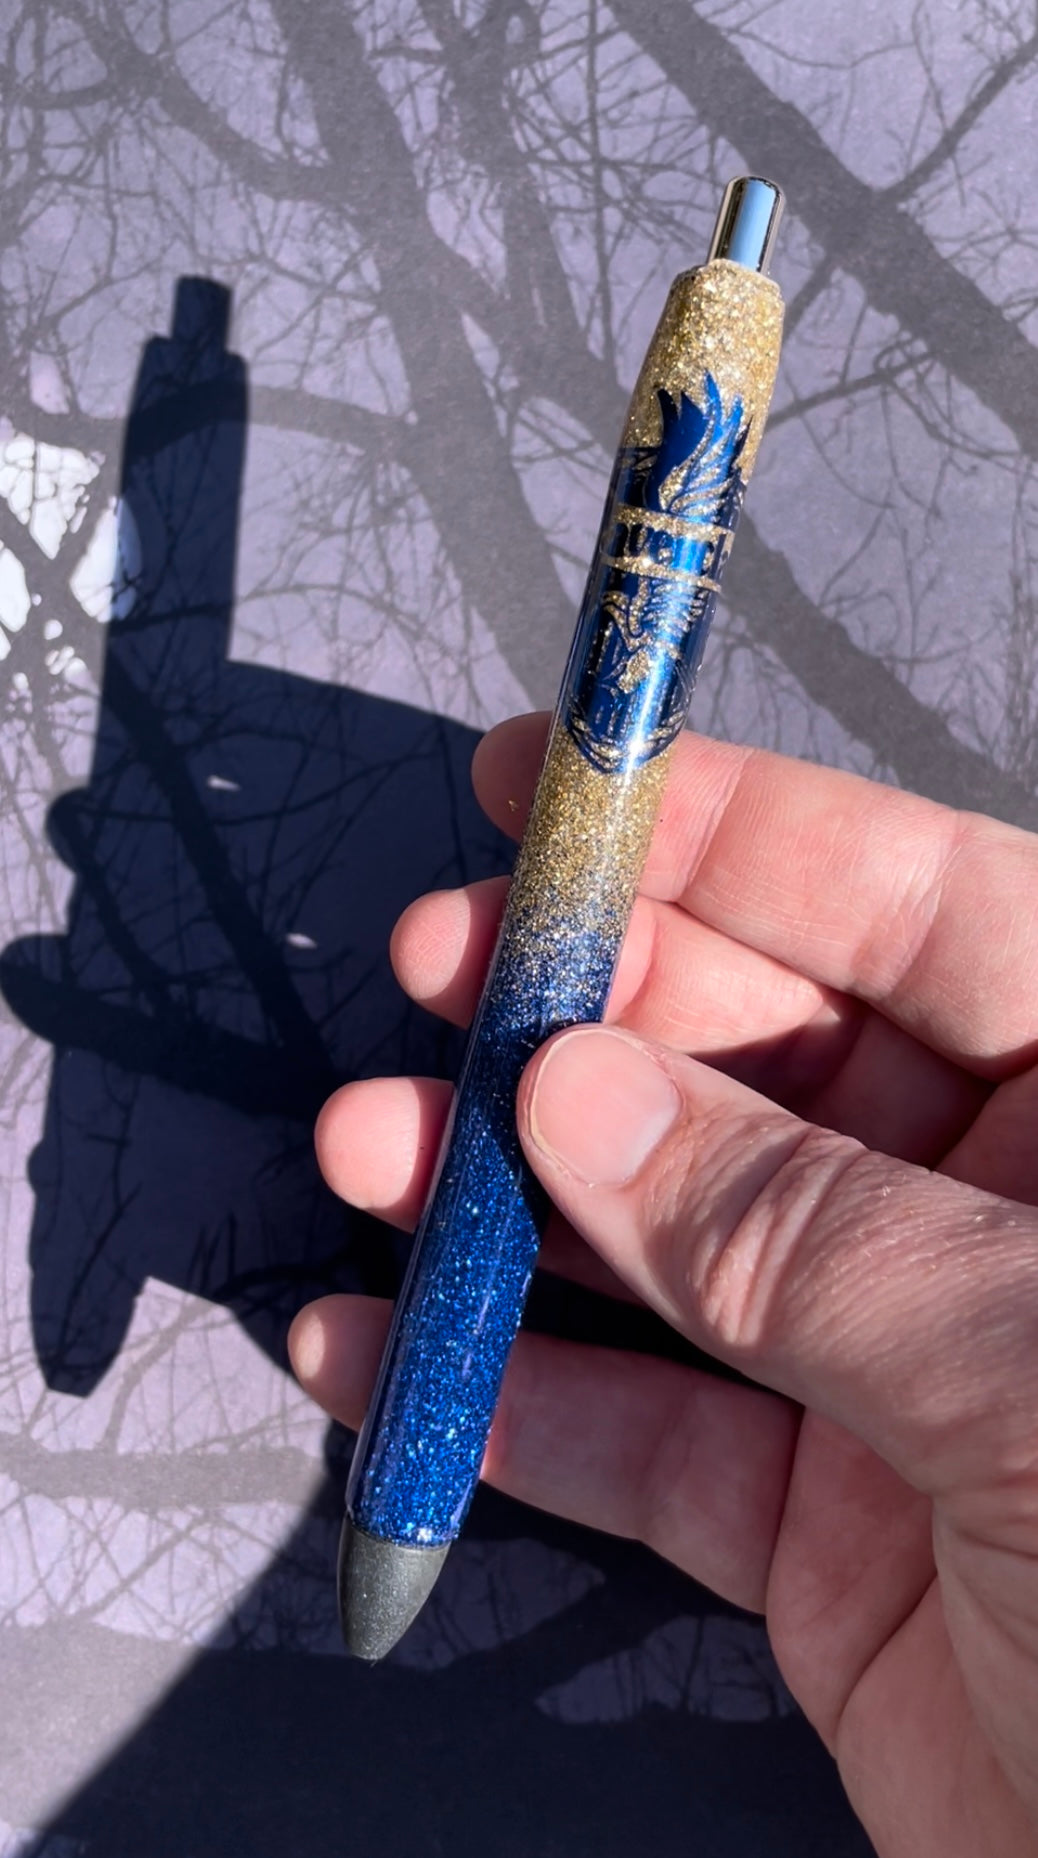 HP Inspired Wizard Houses Glitter Pen Starter Kits with UV Resin Skim Coat  & Charms